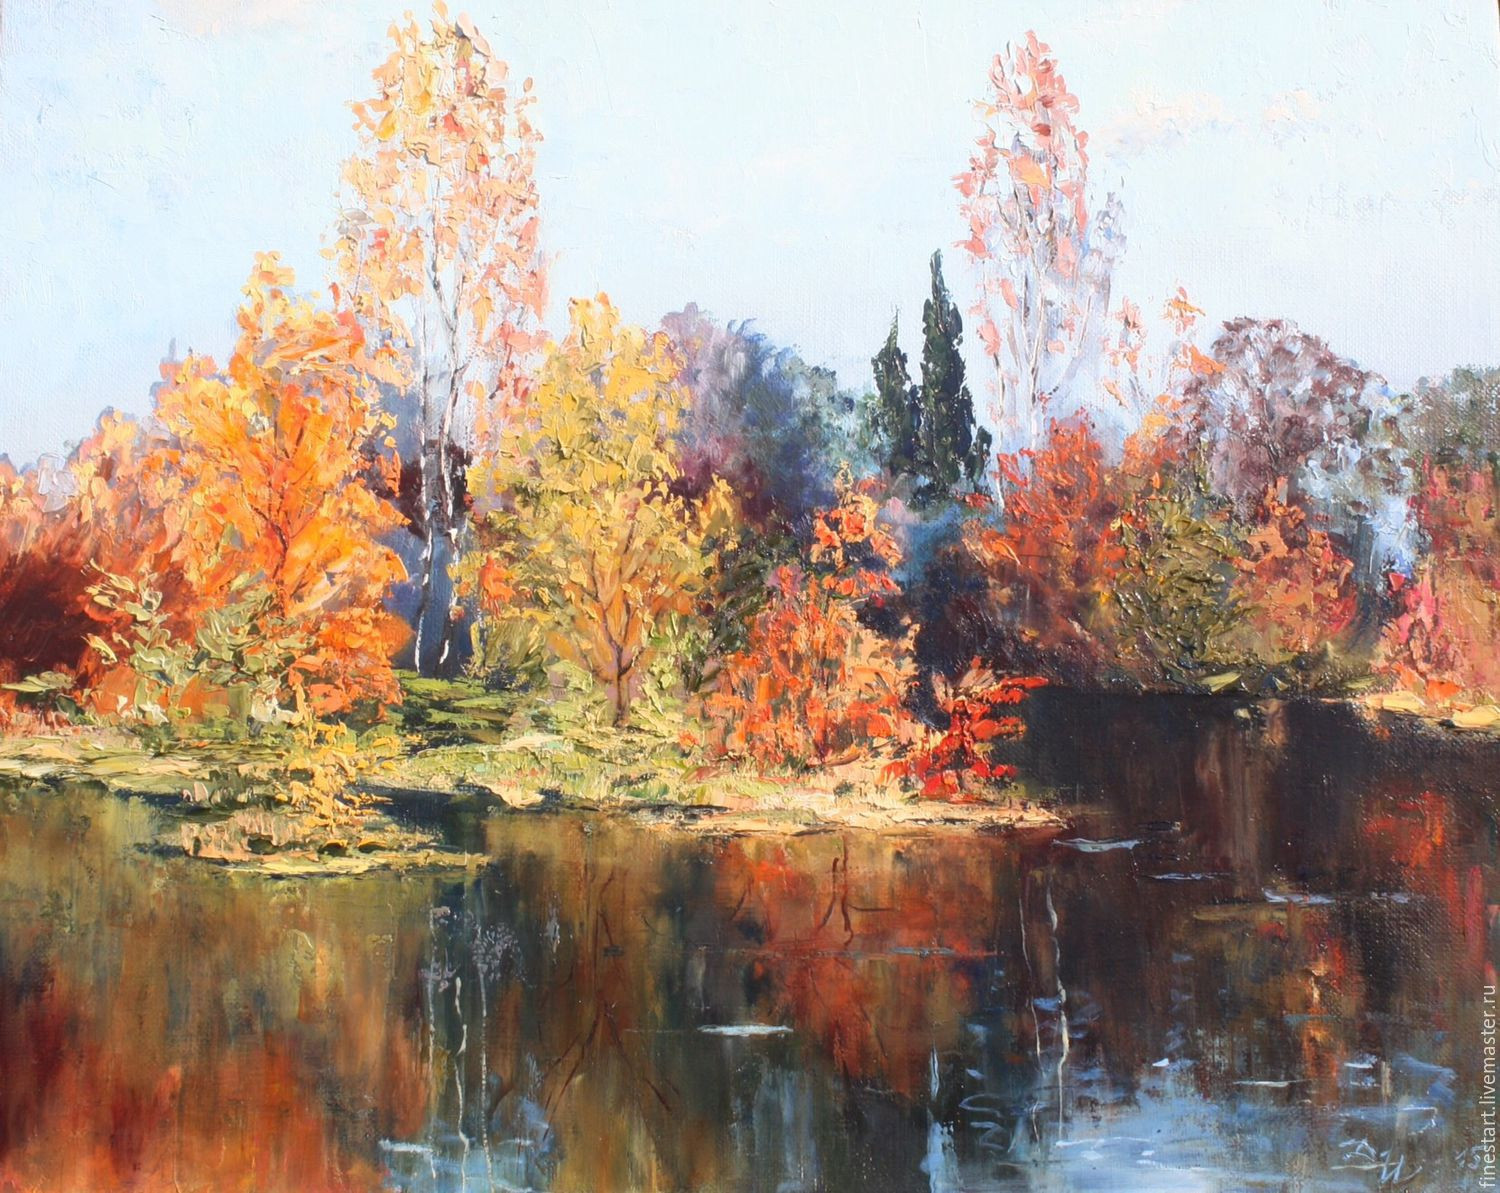 Oil Paintings Landscape
 Oil painting landscape Autumn Oil on Canvas Impressionism